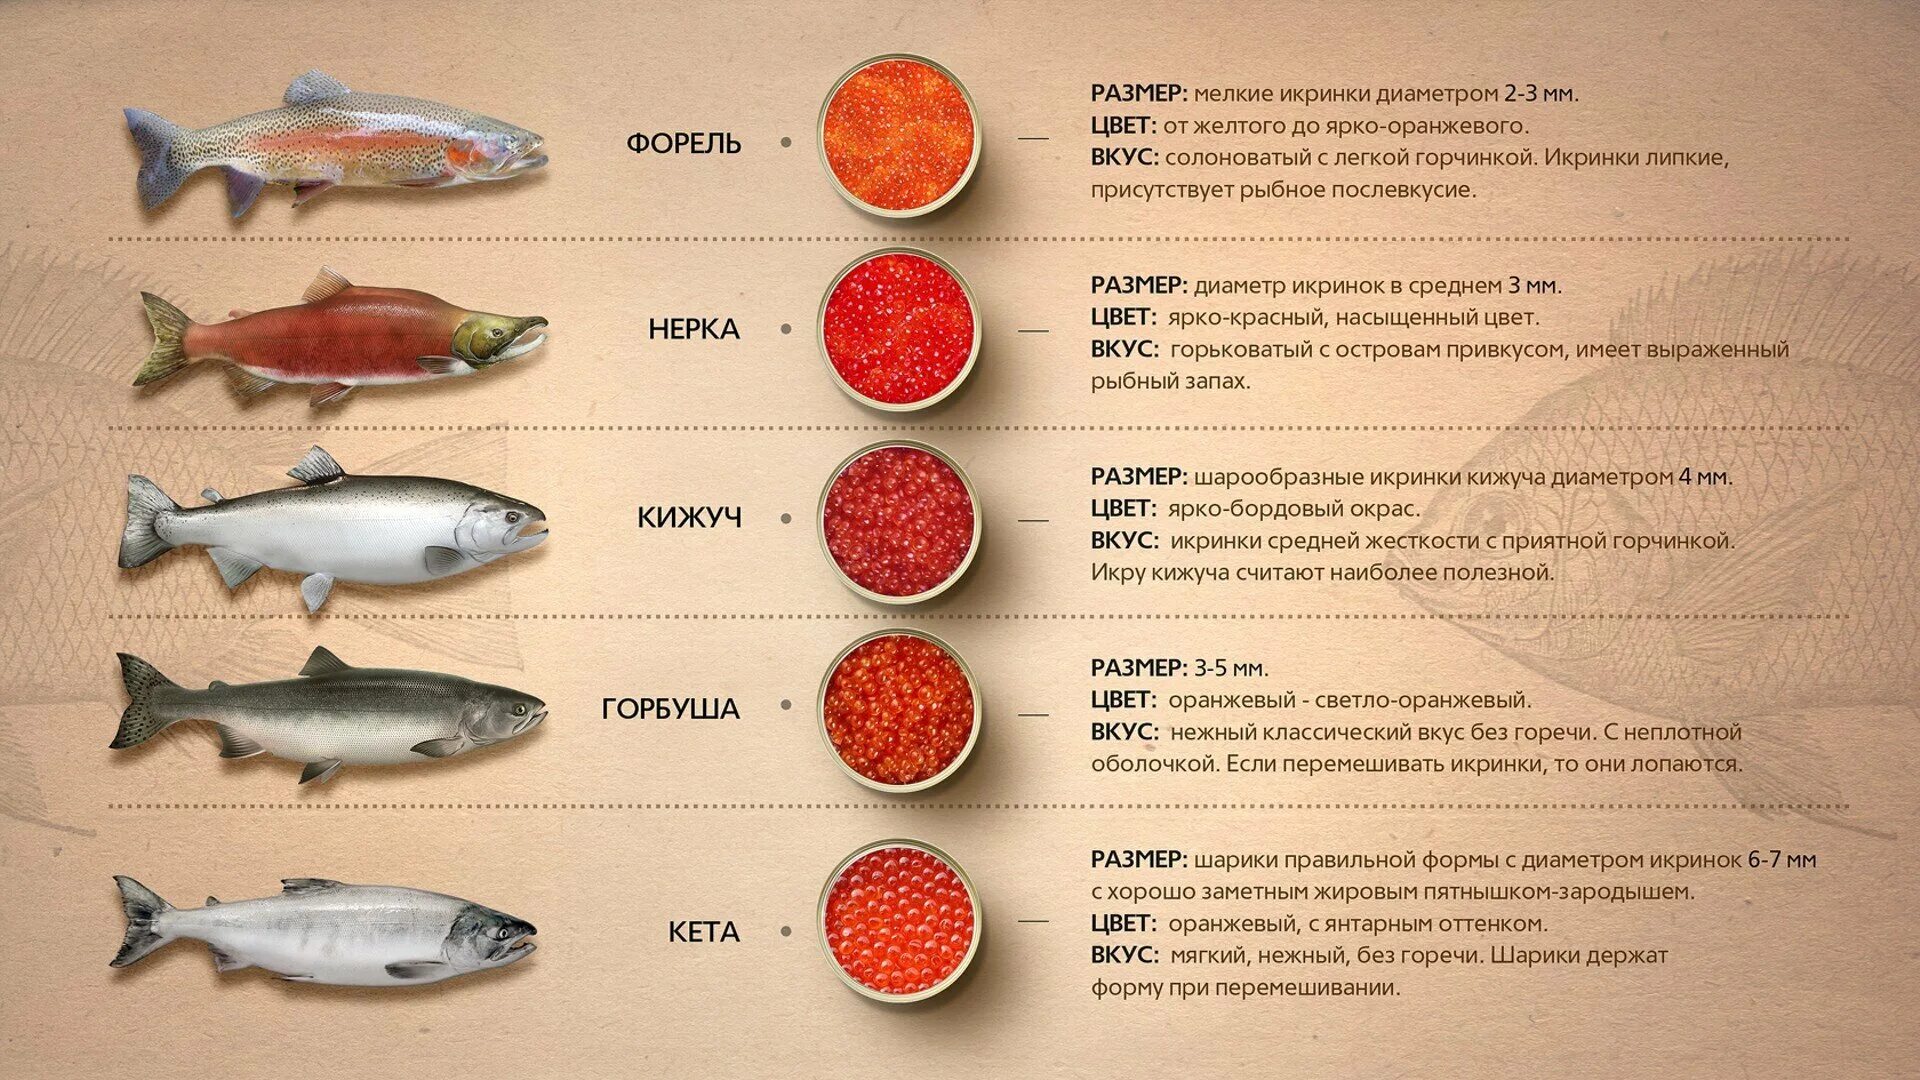 Рыбы семейства лососевых названия. Красная рыба виды названия. Размер икры лососевых рыб. Диаметр икринок лососевых рыб. Таблица лососевых рыб